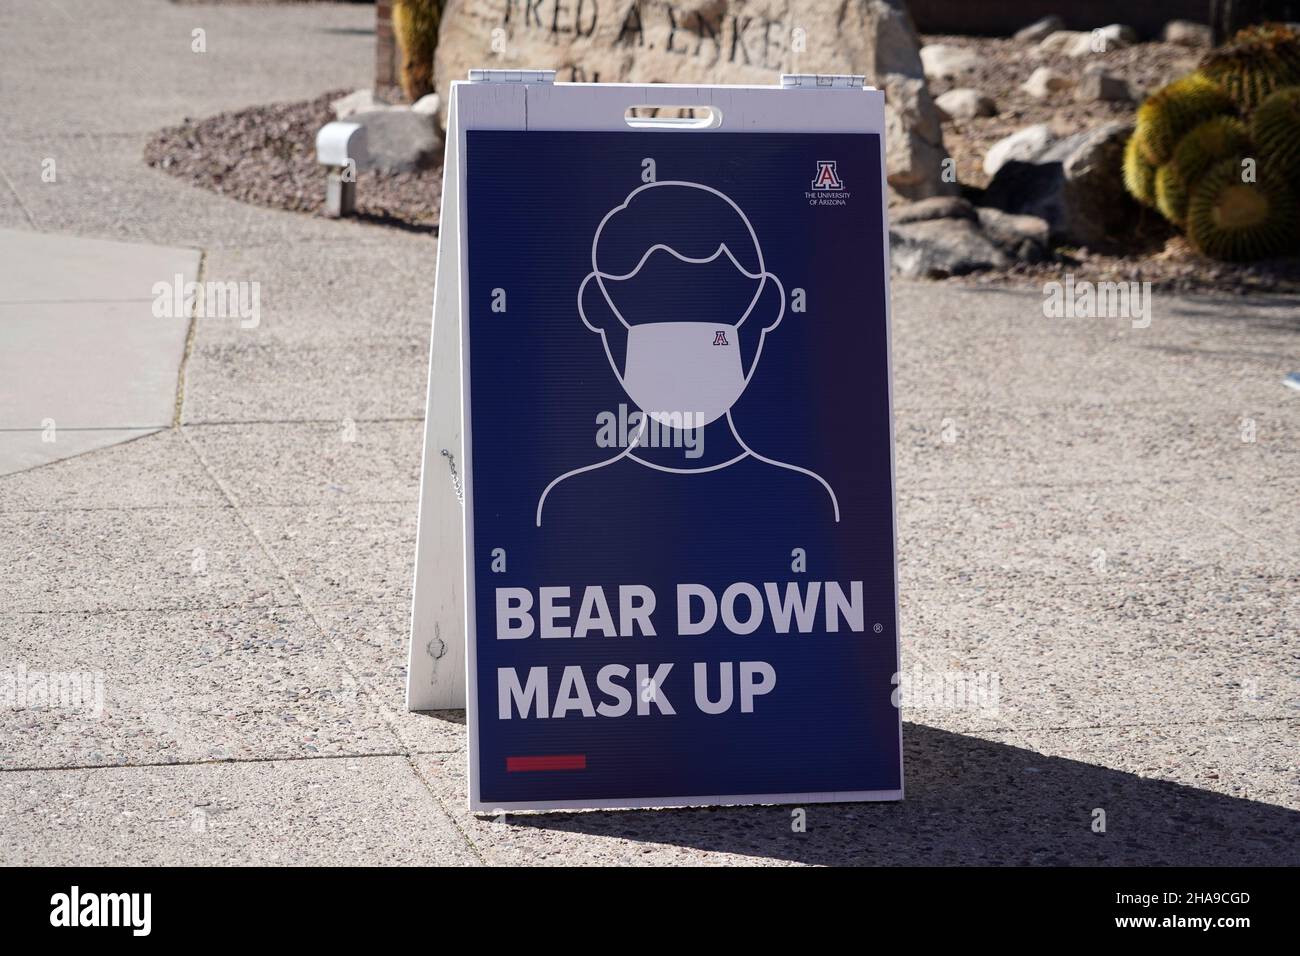 Un avviso maschera viso con le parole 'Bear Down. Mask Up' è visto in mezzo al coronavirus globale COVID-19 pandemic all'università dell'Arizona, martedì, Foto Stock